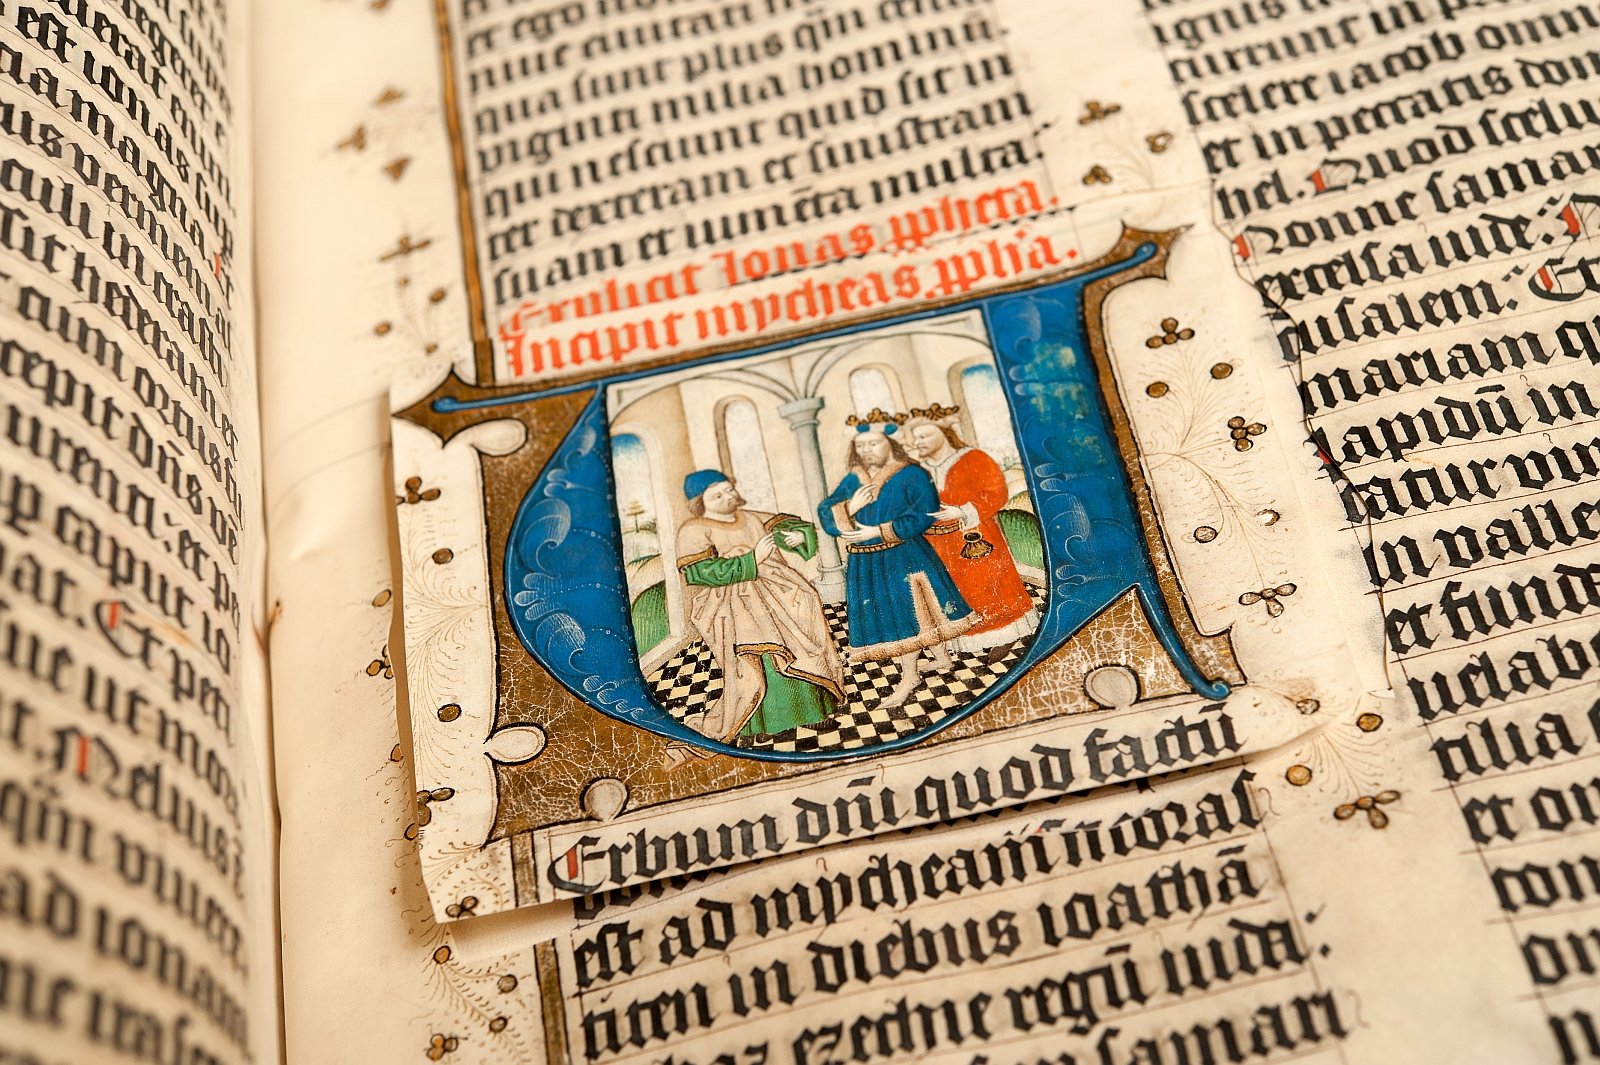 Zwolse Bijbel met uitgesneden initiaal, topstuk uit Bijzondere Collecties van de Universiteitsbibliotheek Utrecht.